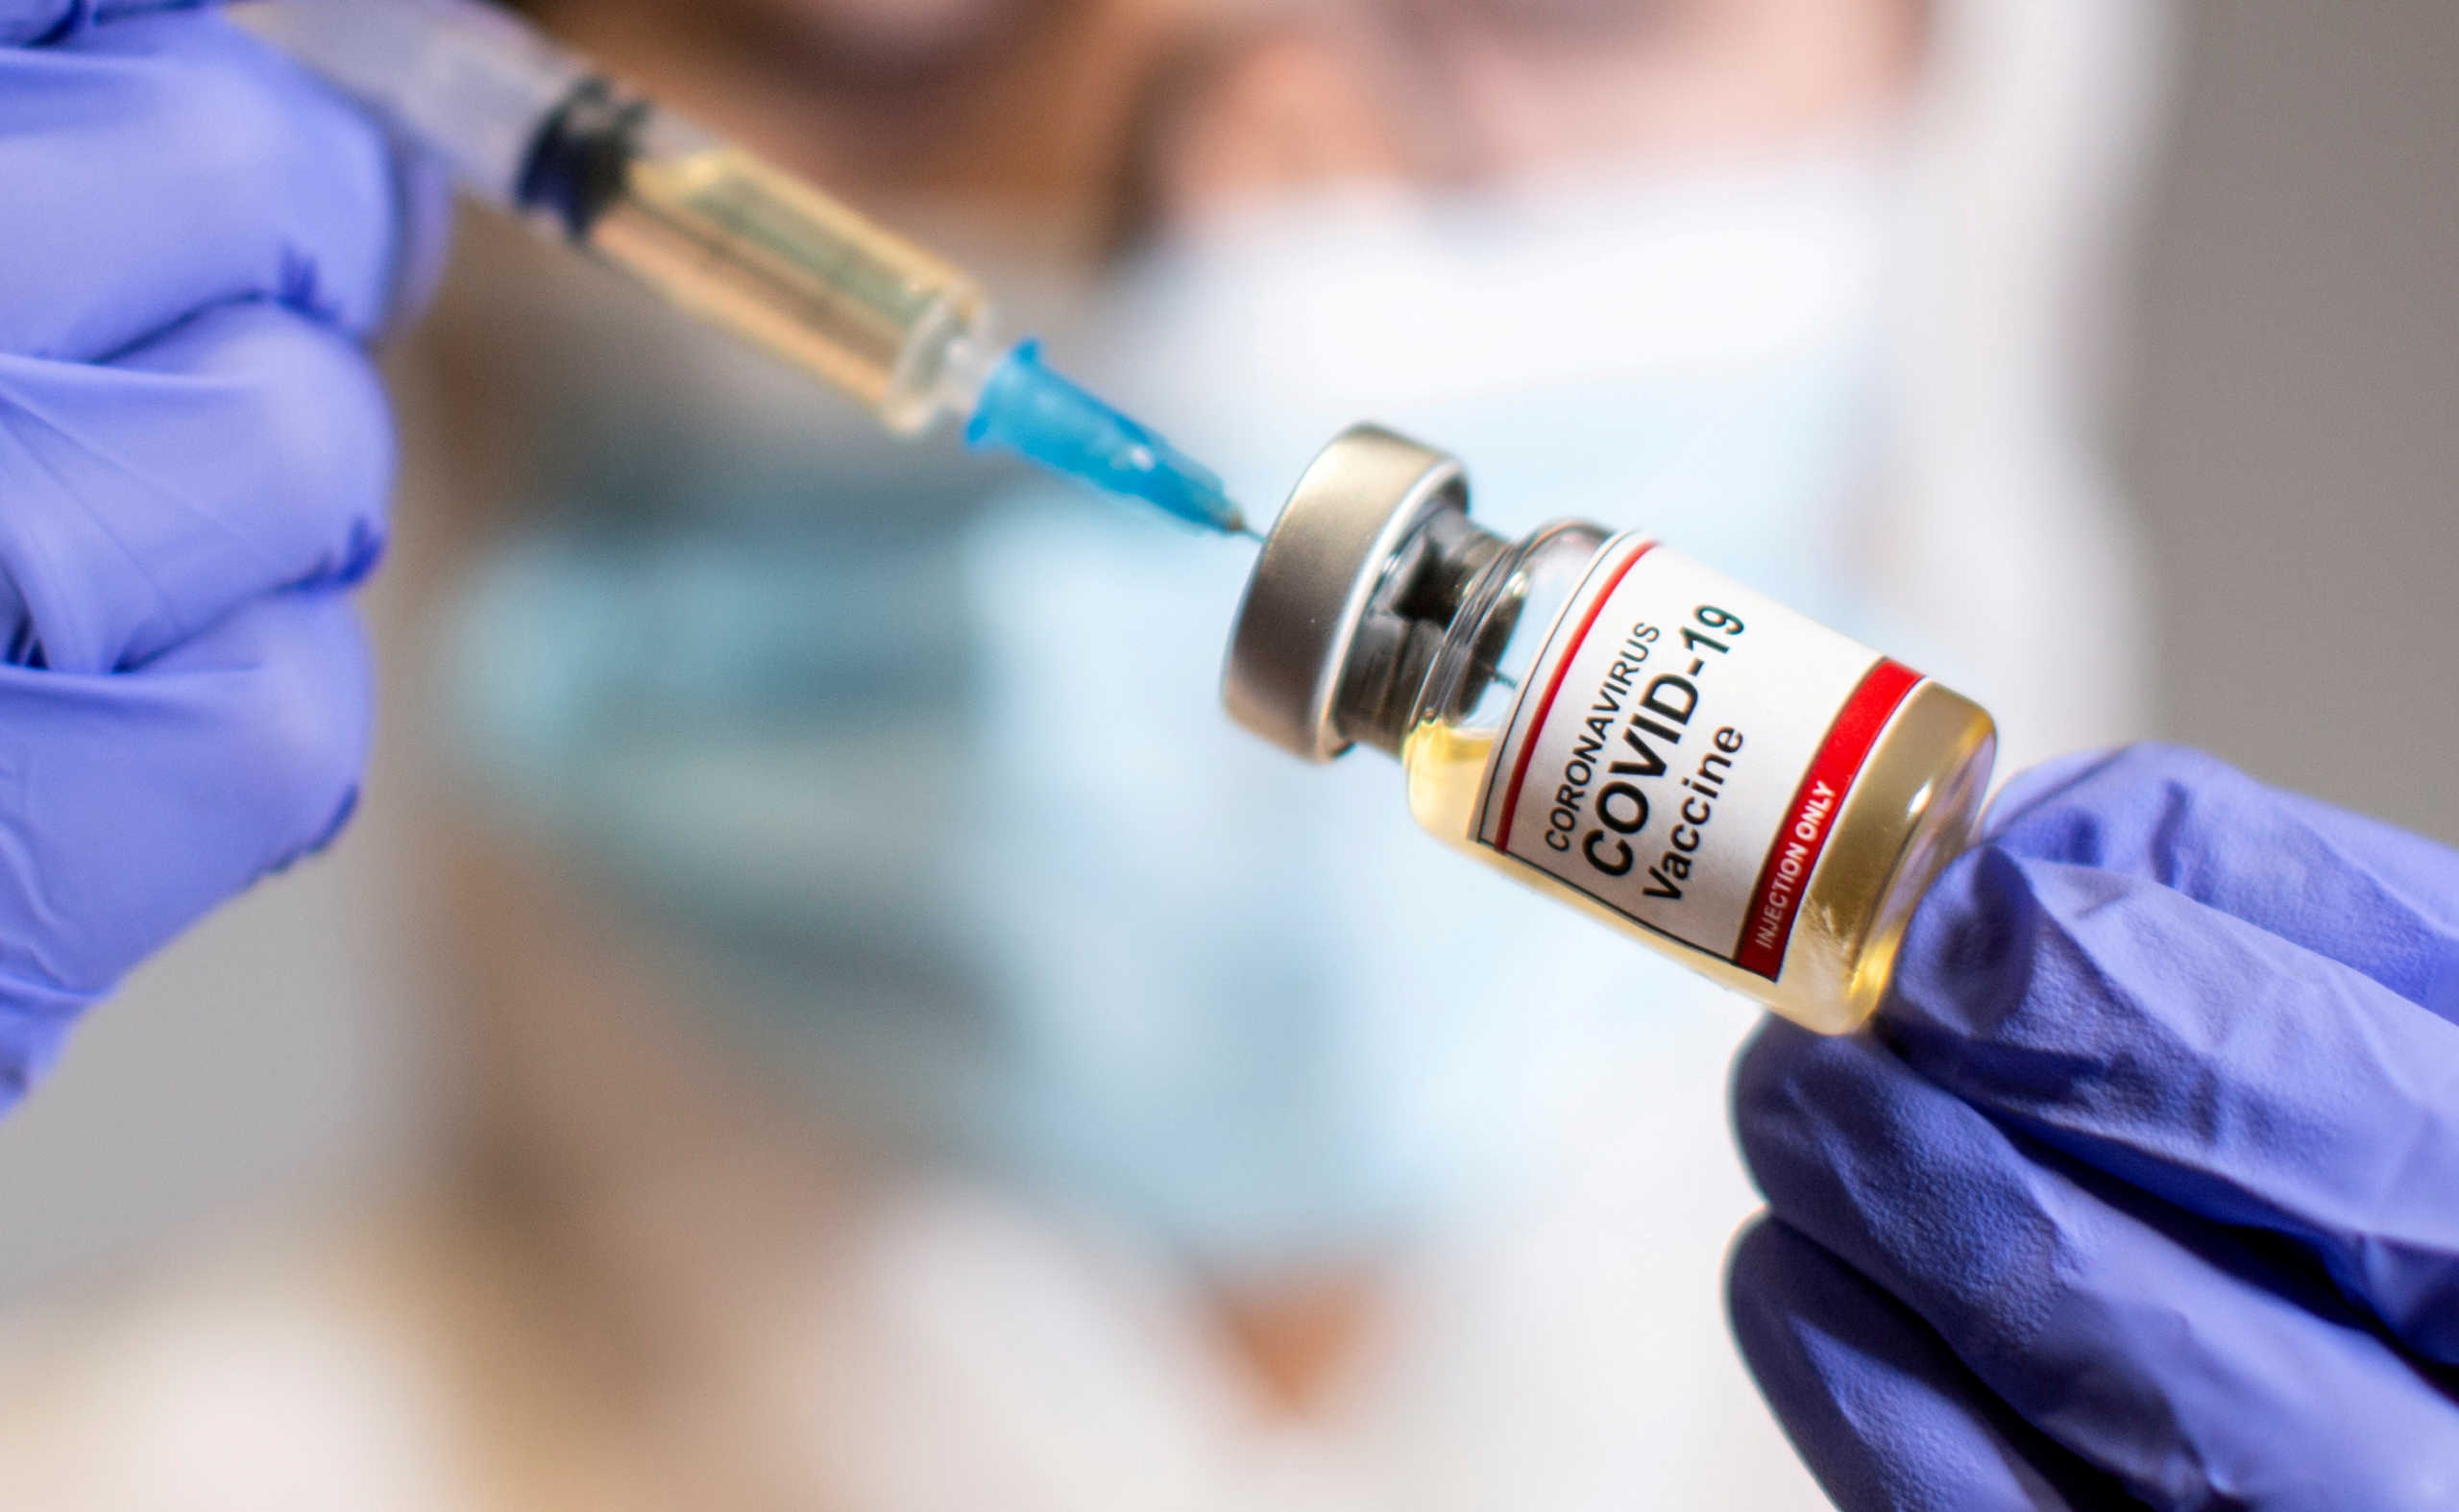 Ανησυχητικά στοιχεία: “Το εμβόλιο δεν θα σταματήσει την εξέλιξη του κορονοϊού”